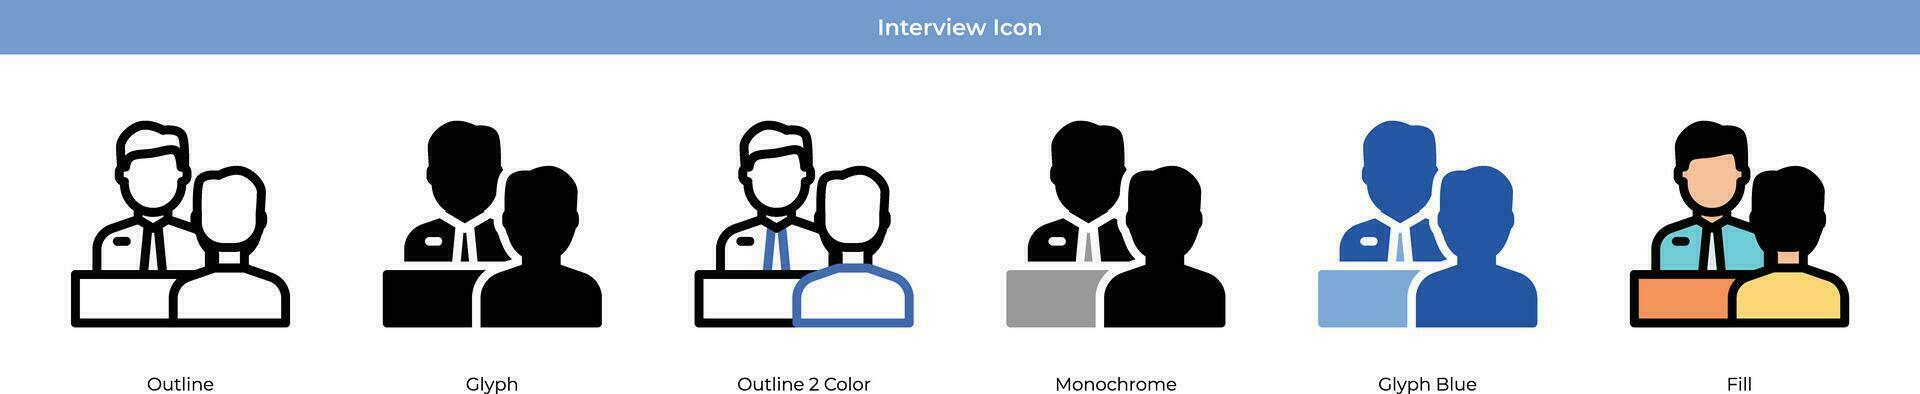 conjunto de iconos de entrevista vector